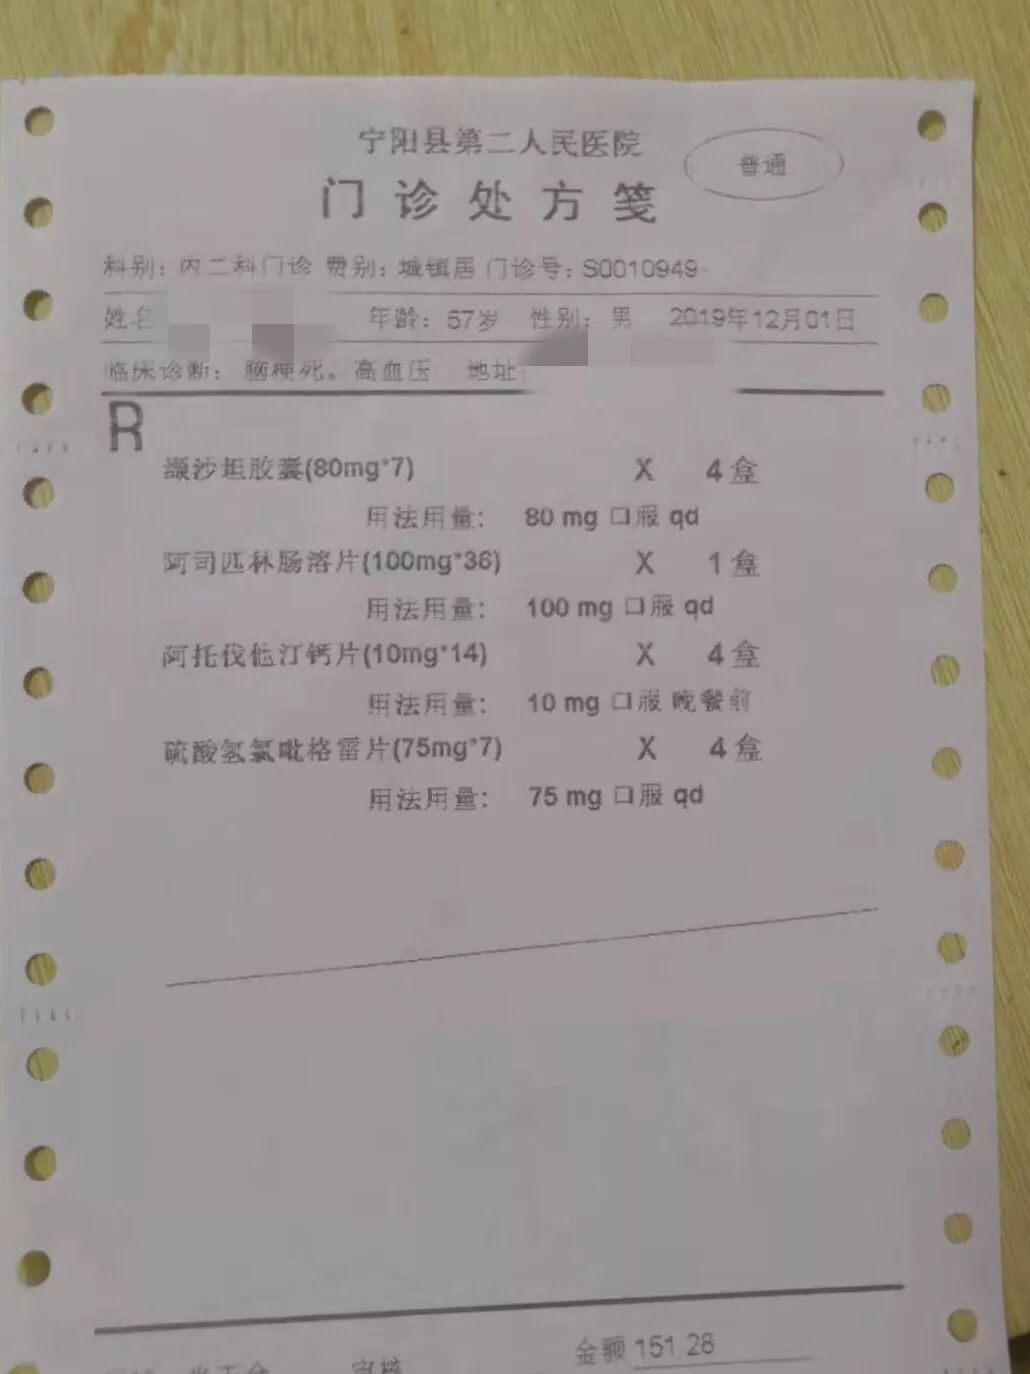 宁阳县第二人民医院12月1日开出的降价药门诊处方